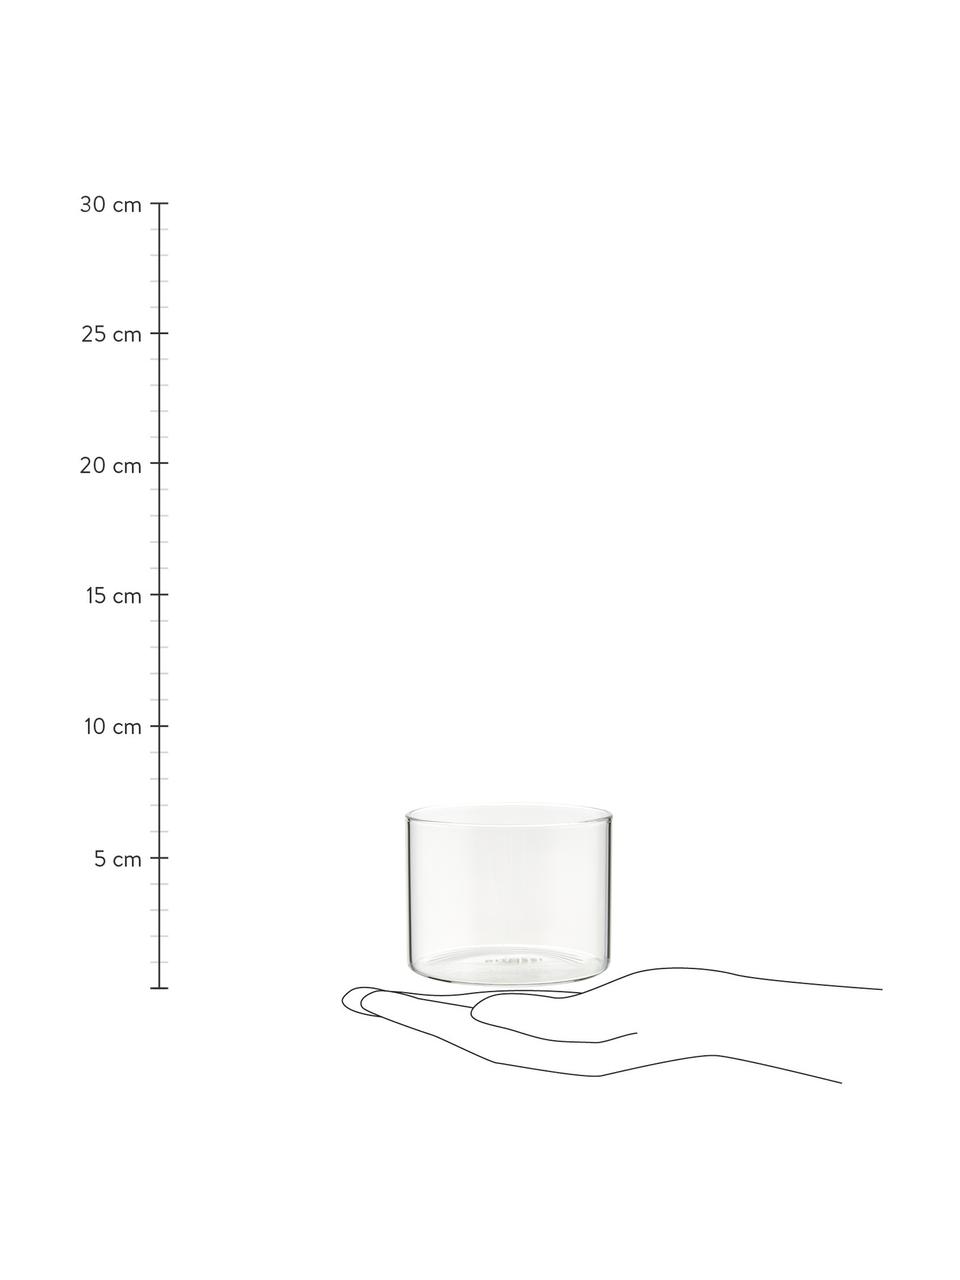 Szklanka ze szkła borokrzemowego Boro, 6 szt., Szkło borokrzemowe, Transparentny, Ø 8 x W 6 cm, 200 ml